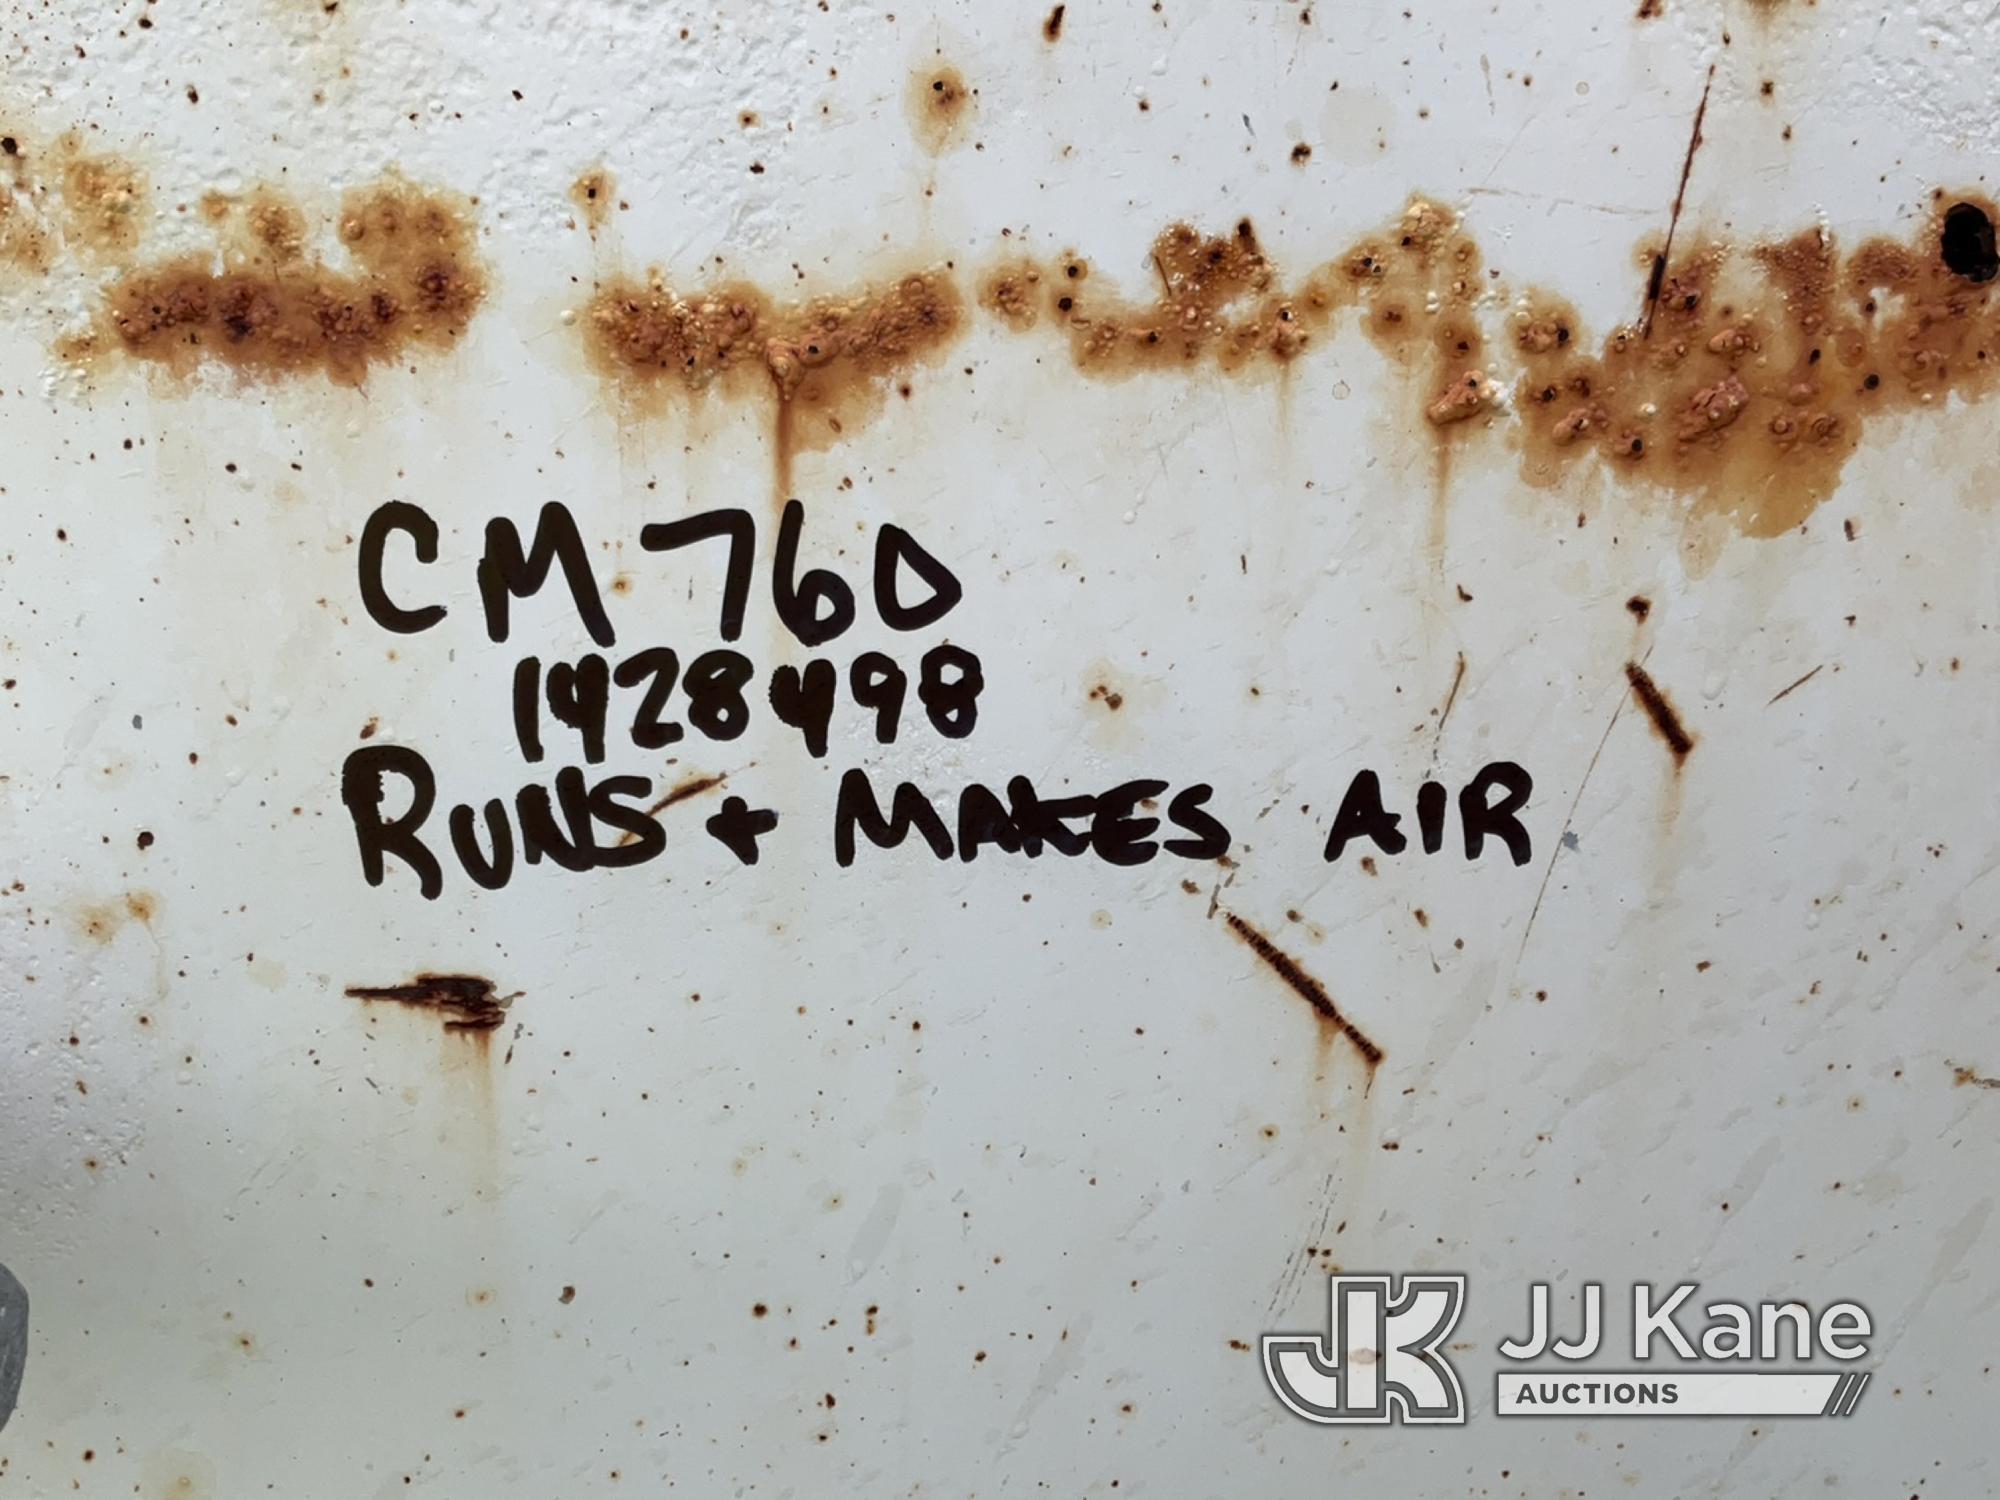 (Charlotte, MI) Sullair Portable Air Compressor No Title, Runs, Makes Air